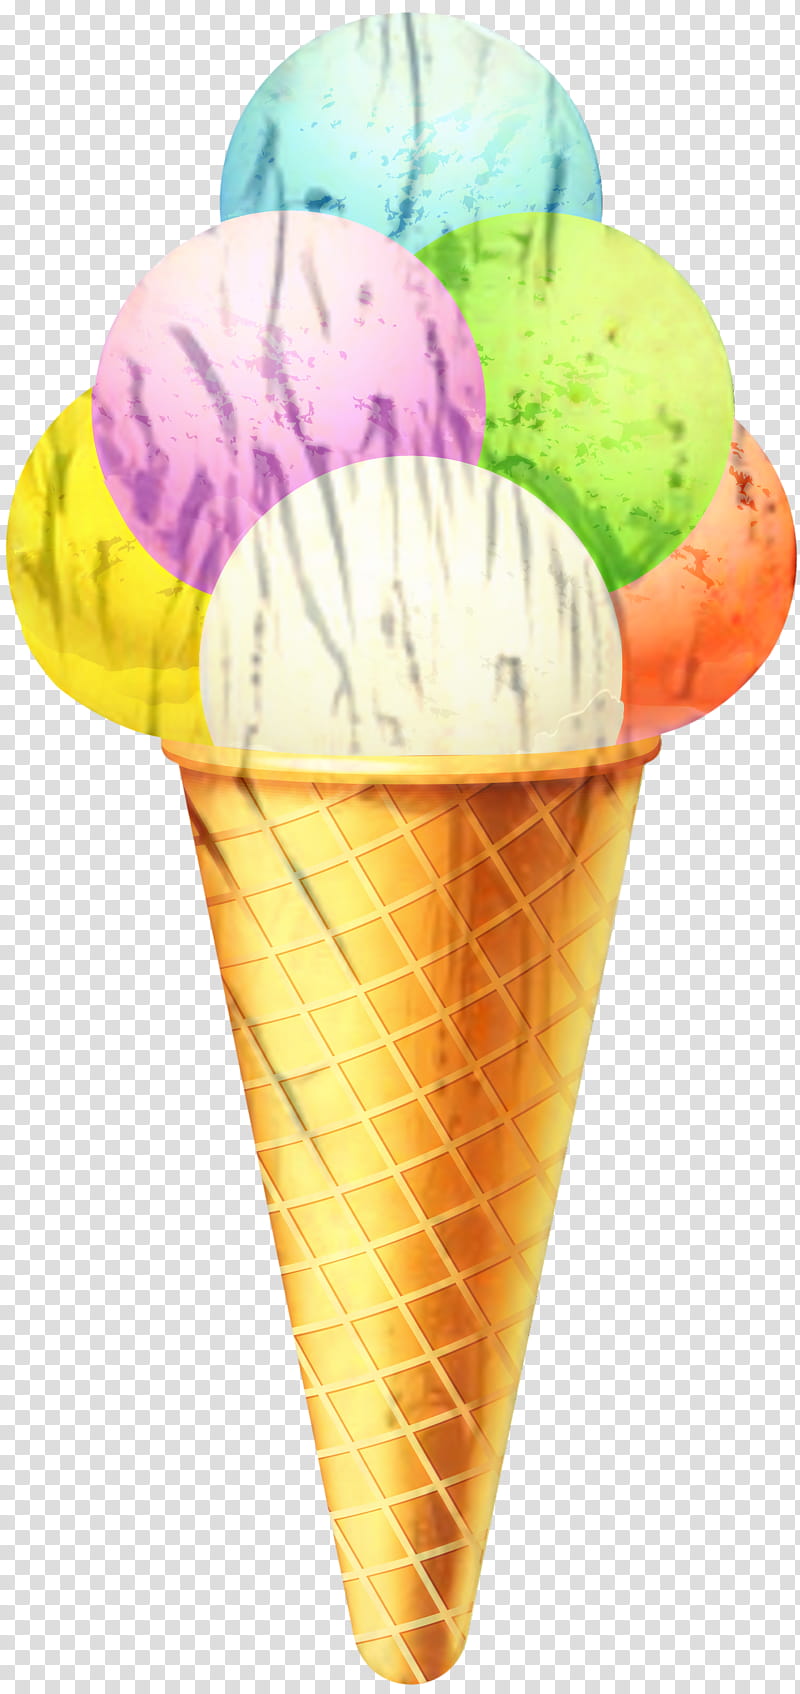 Ice Cream Cone, Italian Ice, Ice Cream Cones, Italian Cuisine, Flavor, Dondurma, Gelato, Frozen Dessert transparent background PNG clipart